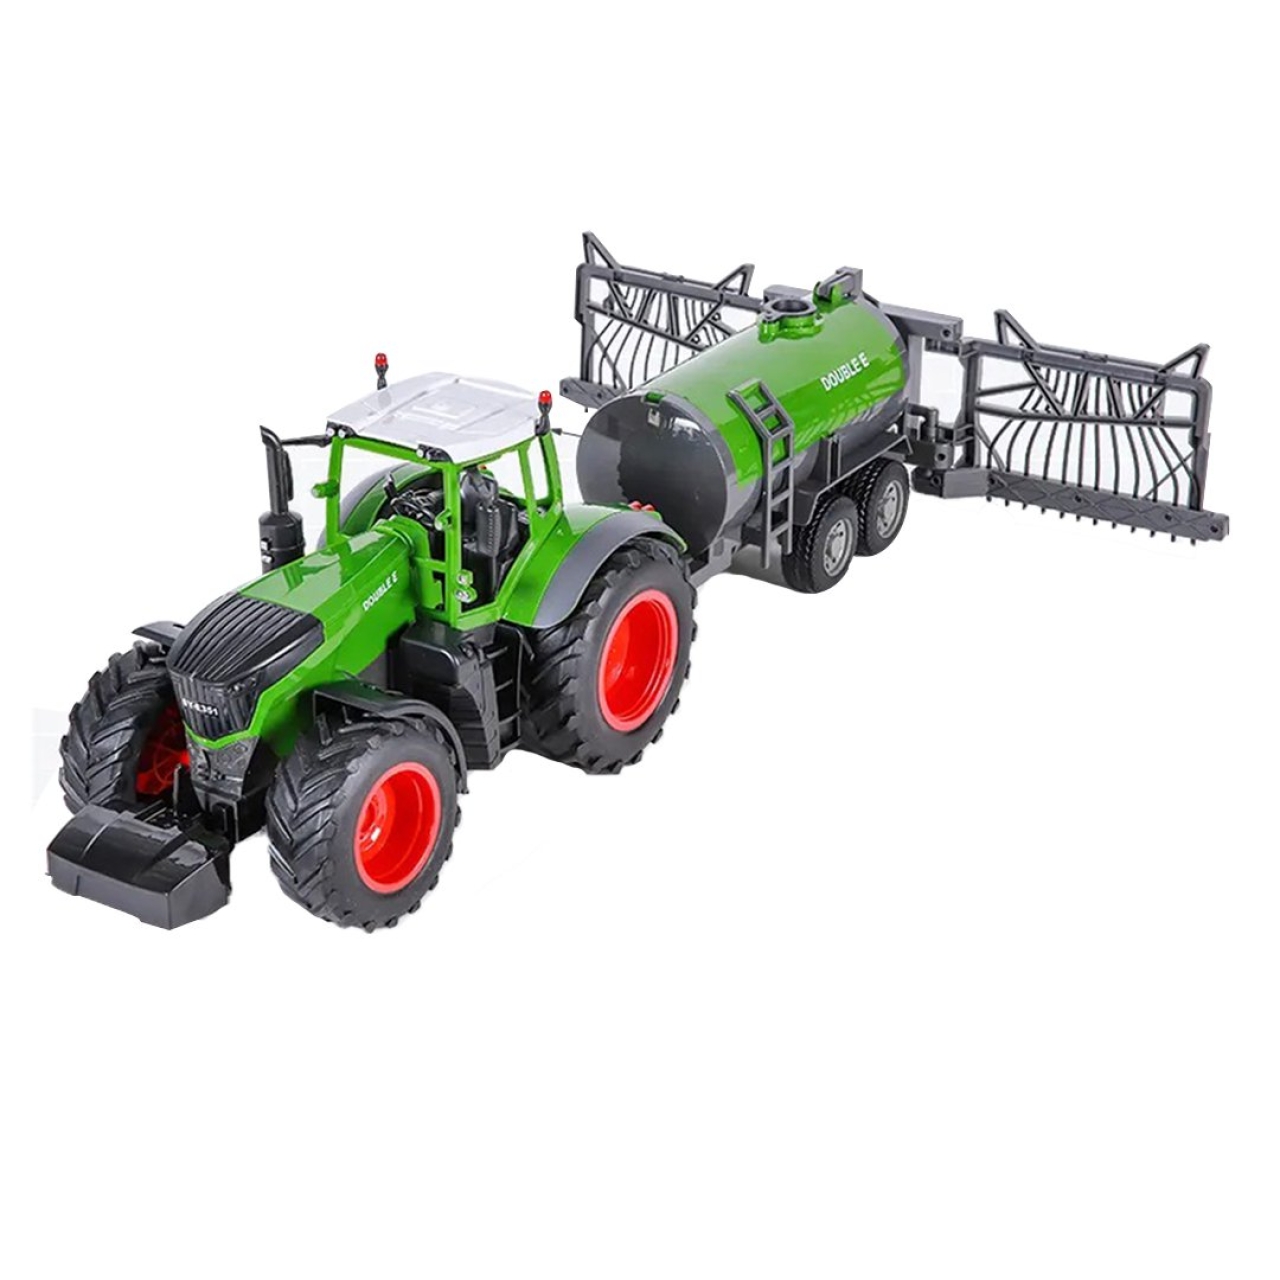 ماشین بازی کنترلی دبل ای مدل Tractor with sprinkler barrel E355-003